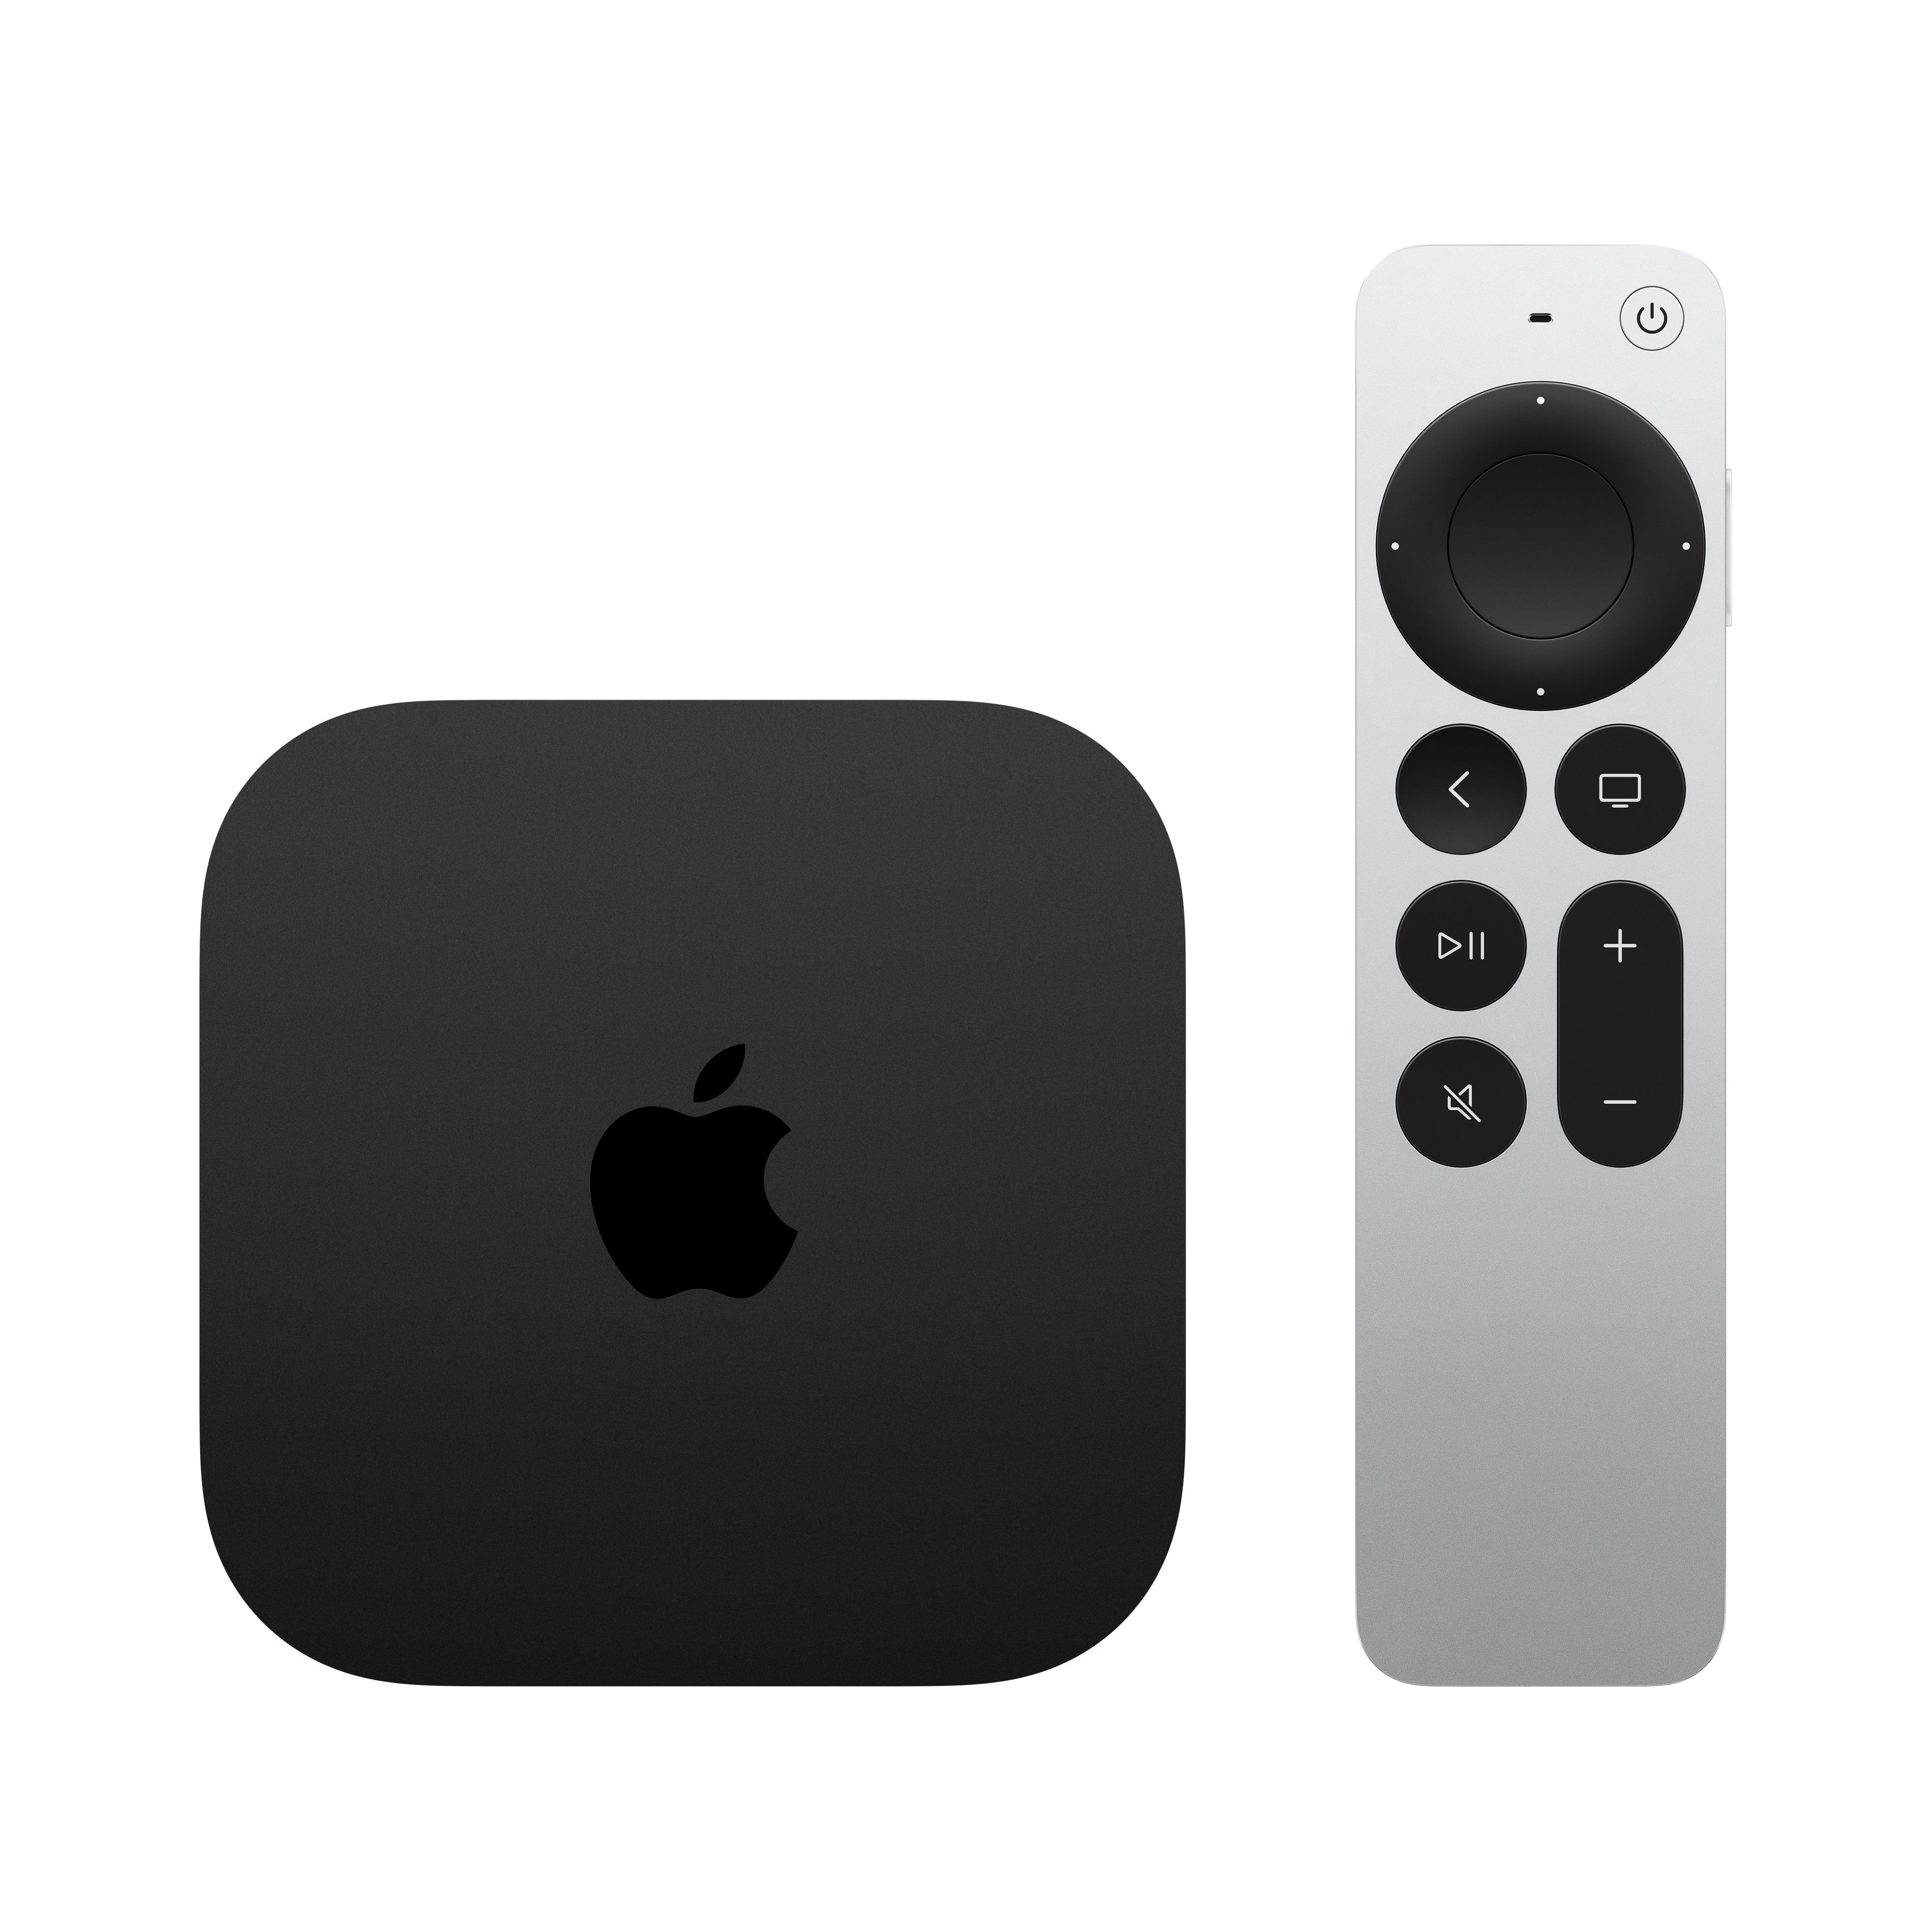 Apple TV 4K Wi-Fi + Ethernet 128GB (3rd Gen)